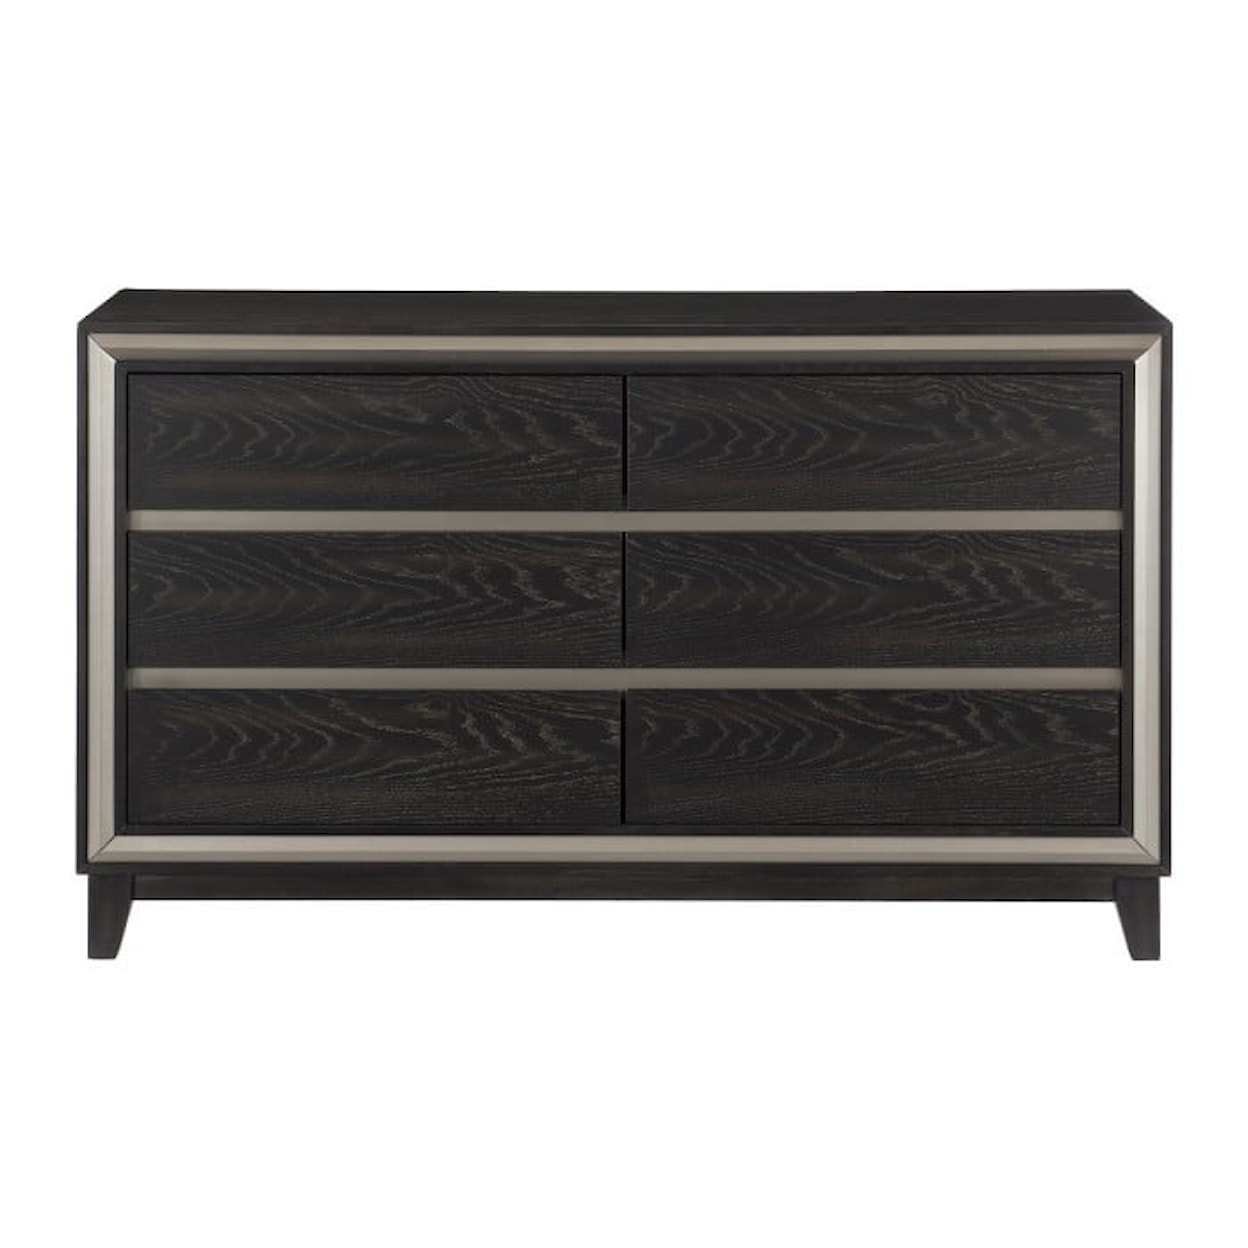 Homelegance Furniture Grant 6-Drawer Dresser